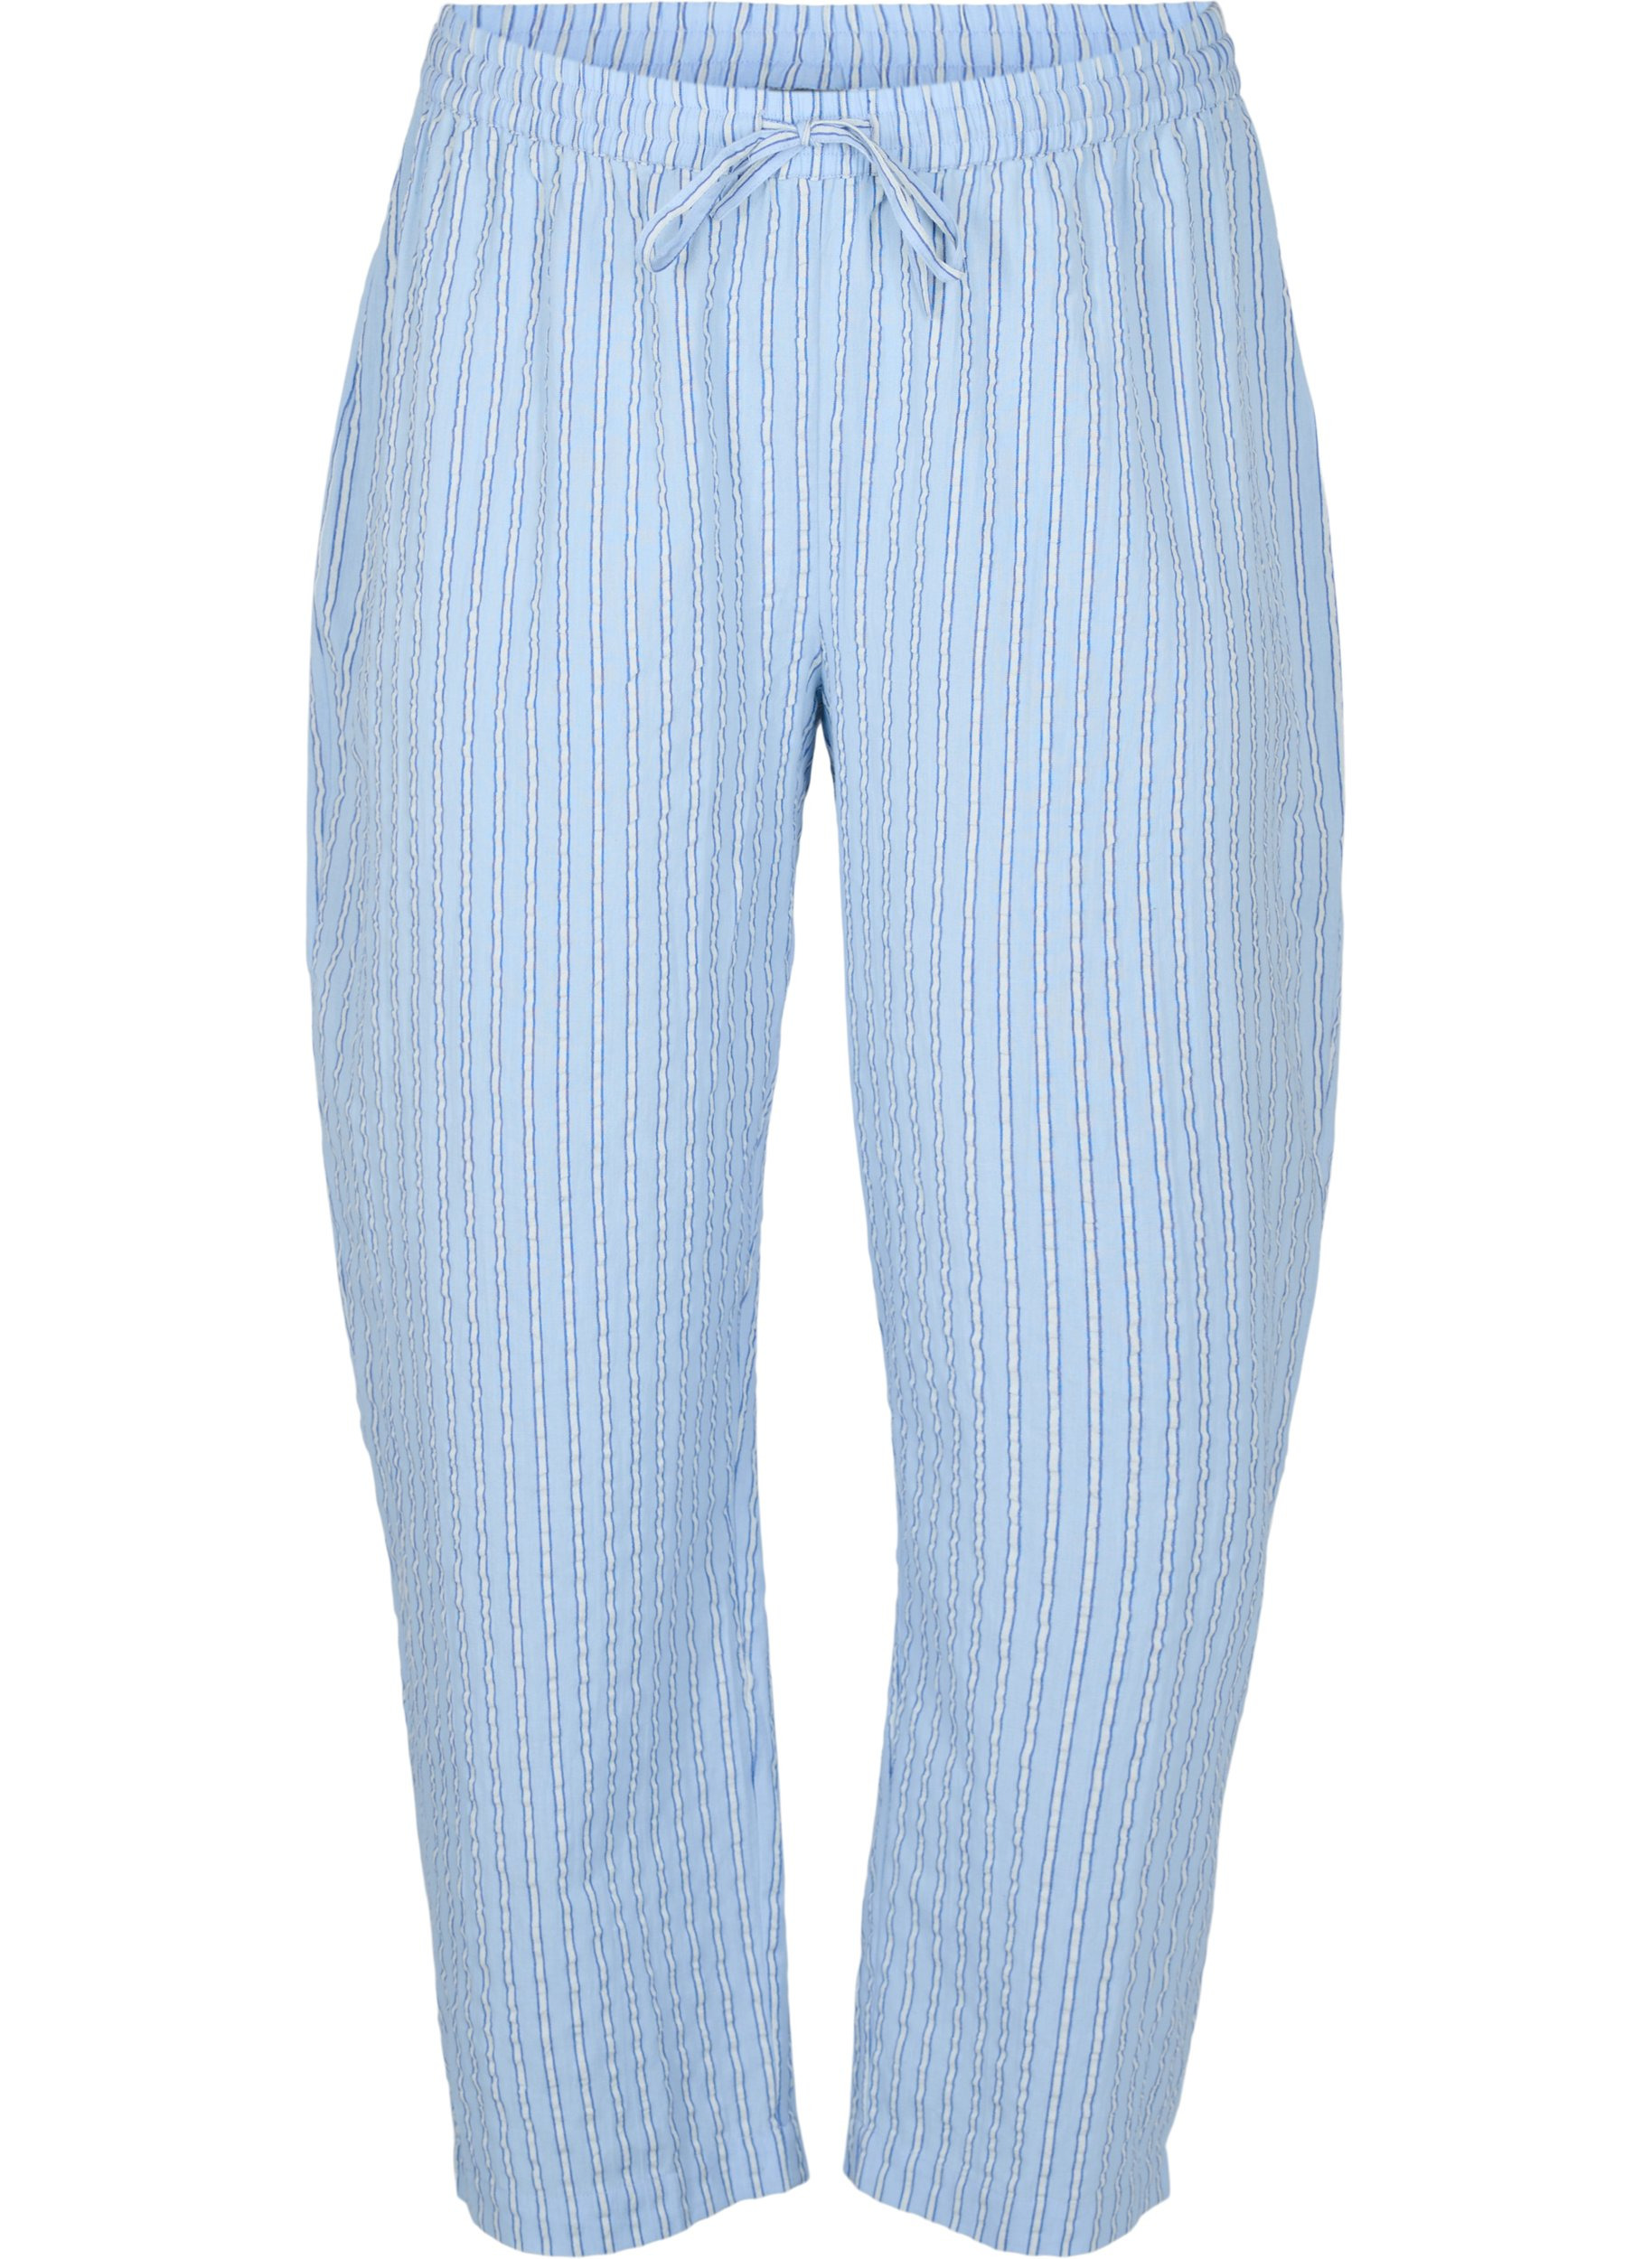 Lockere, gestreifte Schlafanzughose aus Baumwolle, Chambray Blue Stripe